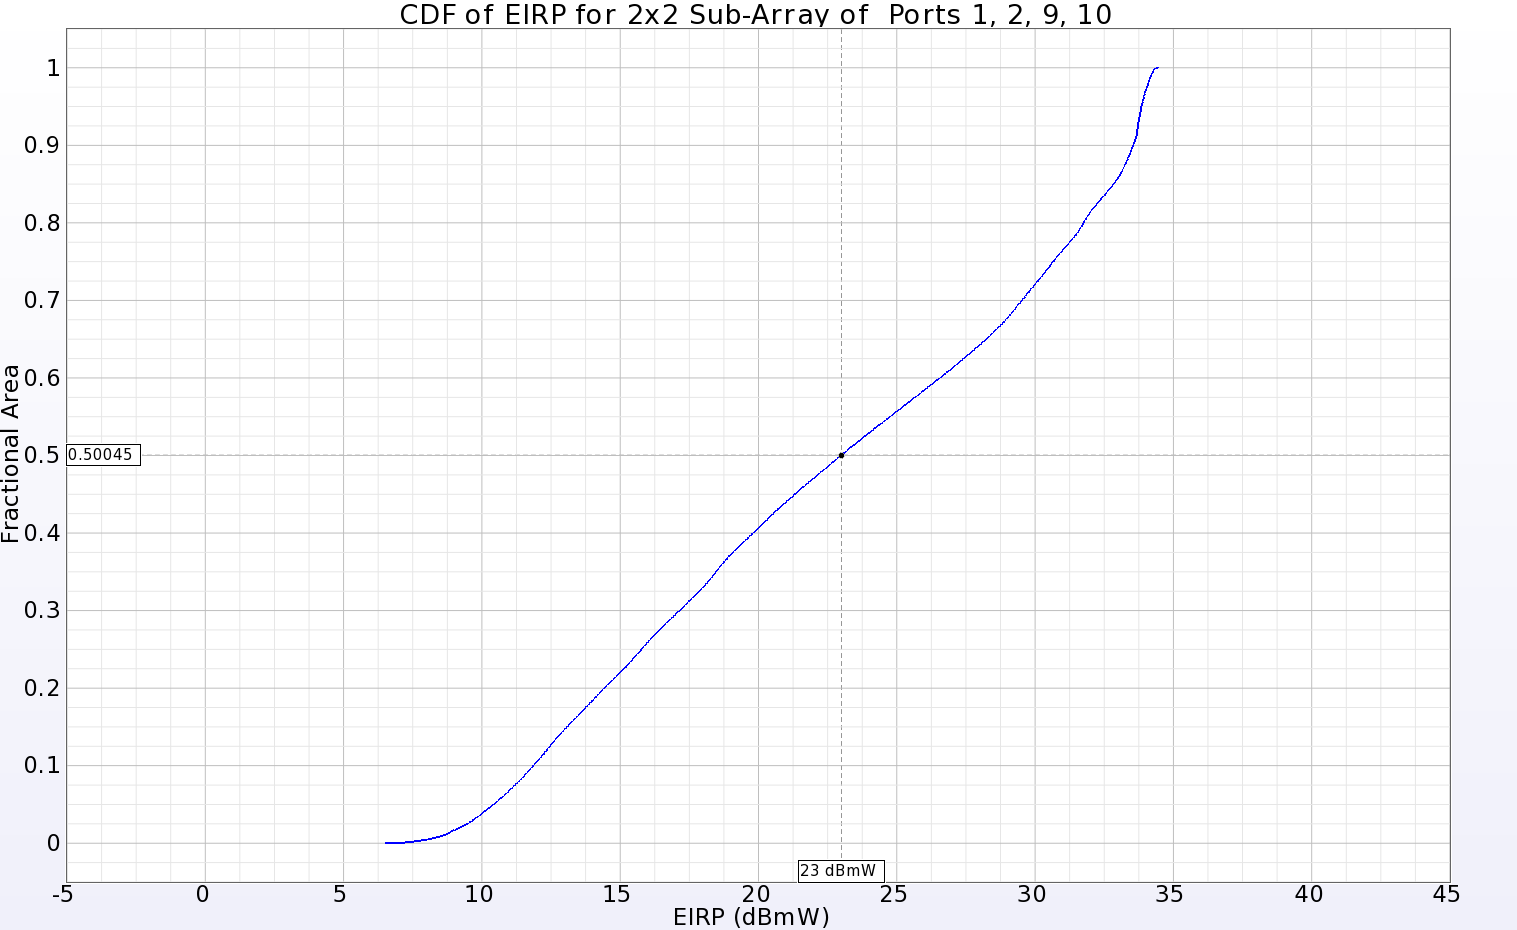 Abbildung 13: Die CDF des EIRP-Plots für ein 2x2-Sub-Array in einer Ecke des Haupt-Arrays zeigt eine positive Verstärkung über 50 % der Fernzone für eine Eingangsleistung von 23 dBmW.